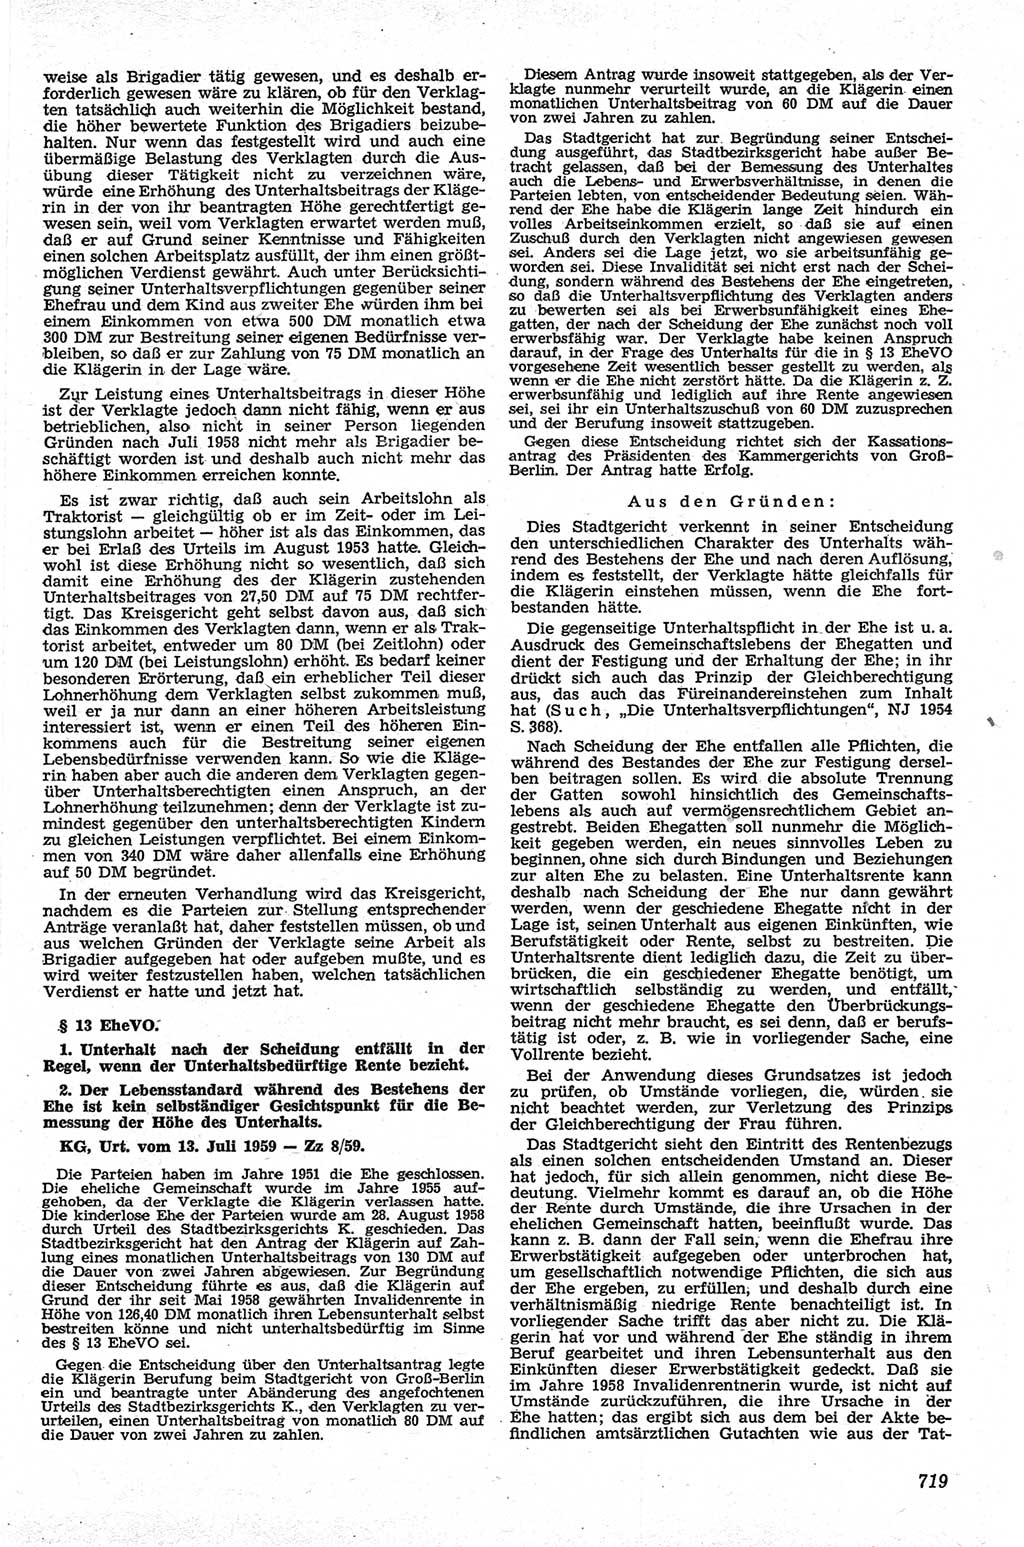 Neue Justiz (NJ), Zeitschrift für Recht und Rechtswissenschaft [Deutsche Demokratische Republik (DDR)], 13. Jahrgang 1959, Seite 719 (NJ DDR 1959, S. 719)